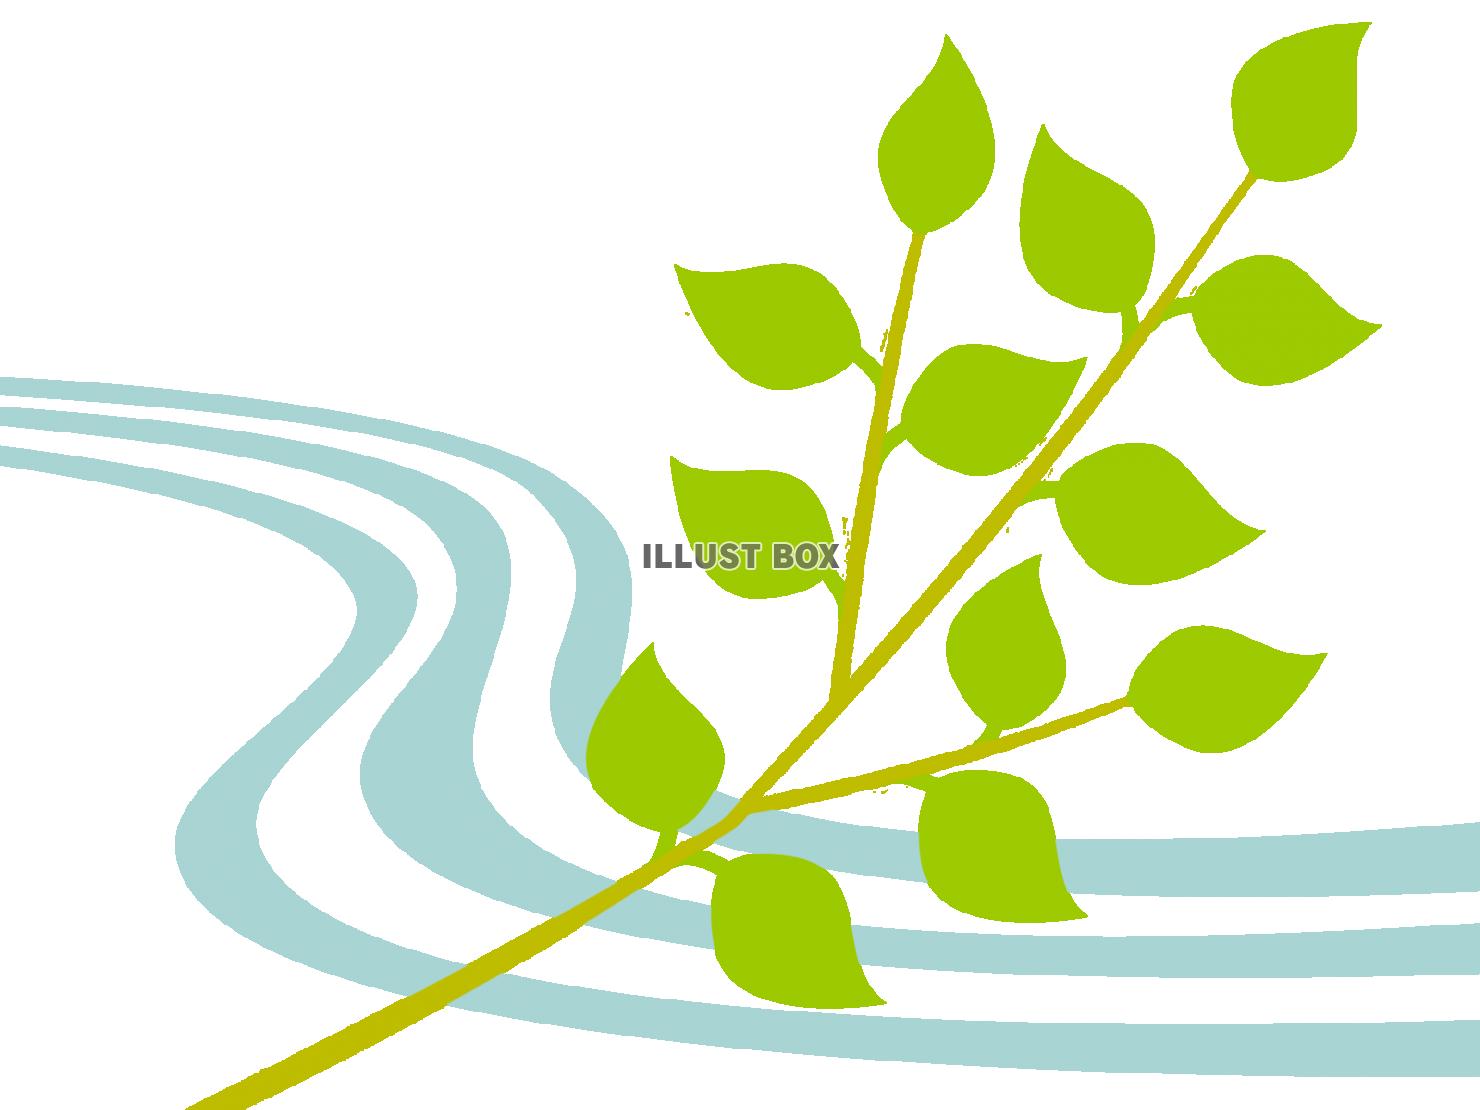 新緑の木の葉っぱ壁紙画像シンプル背景素材イラスト透過png